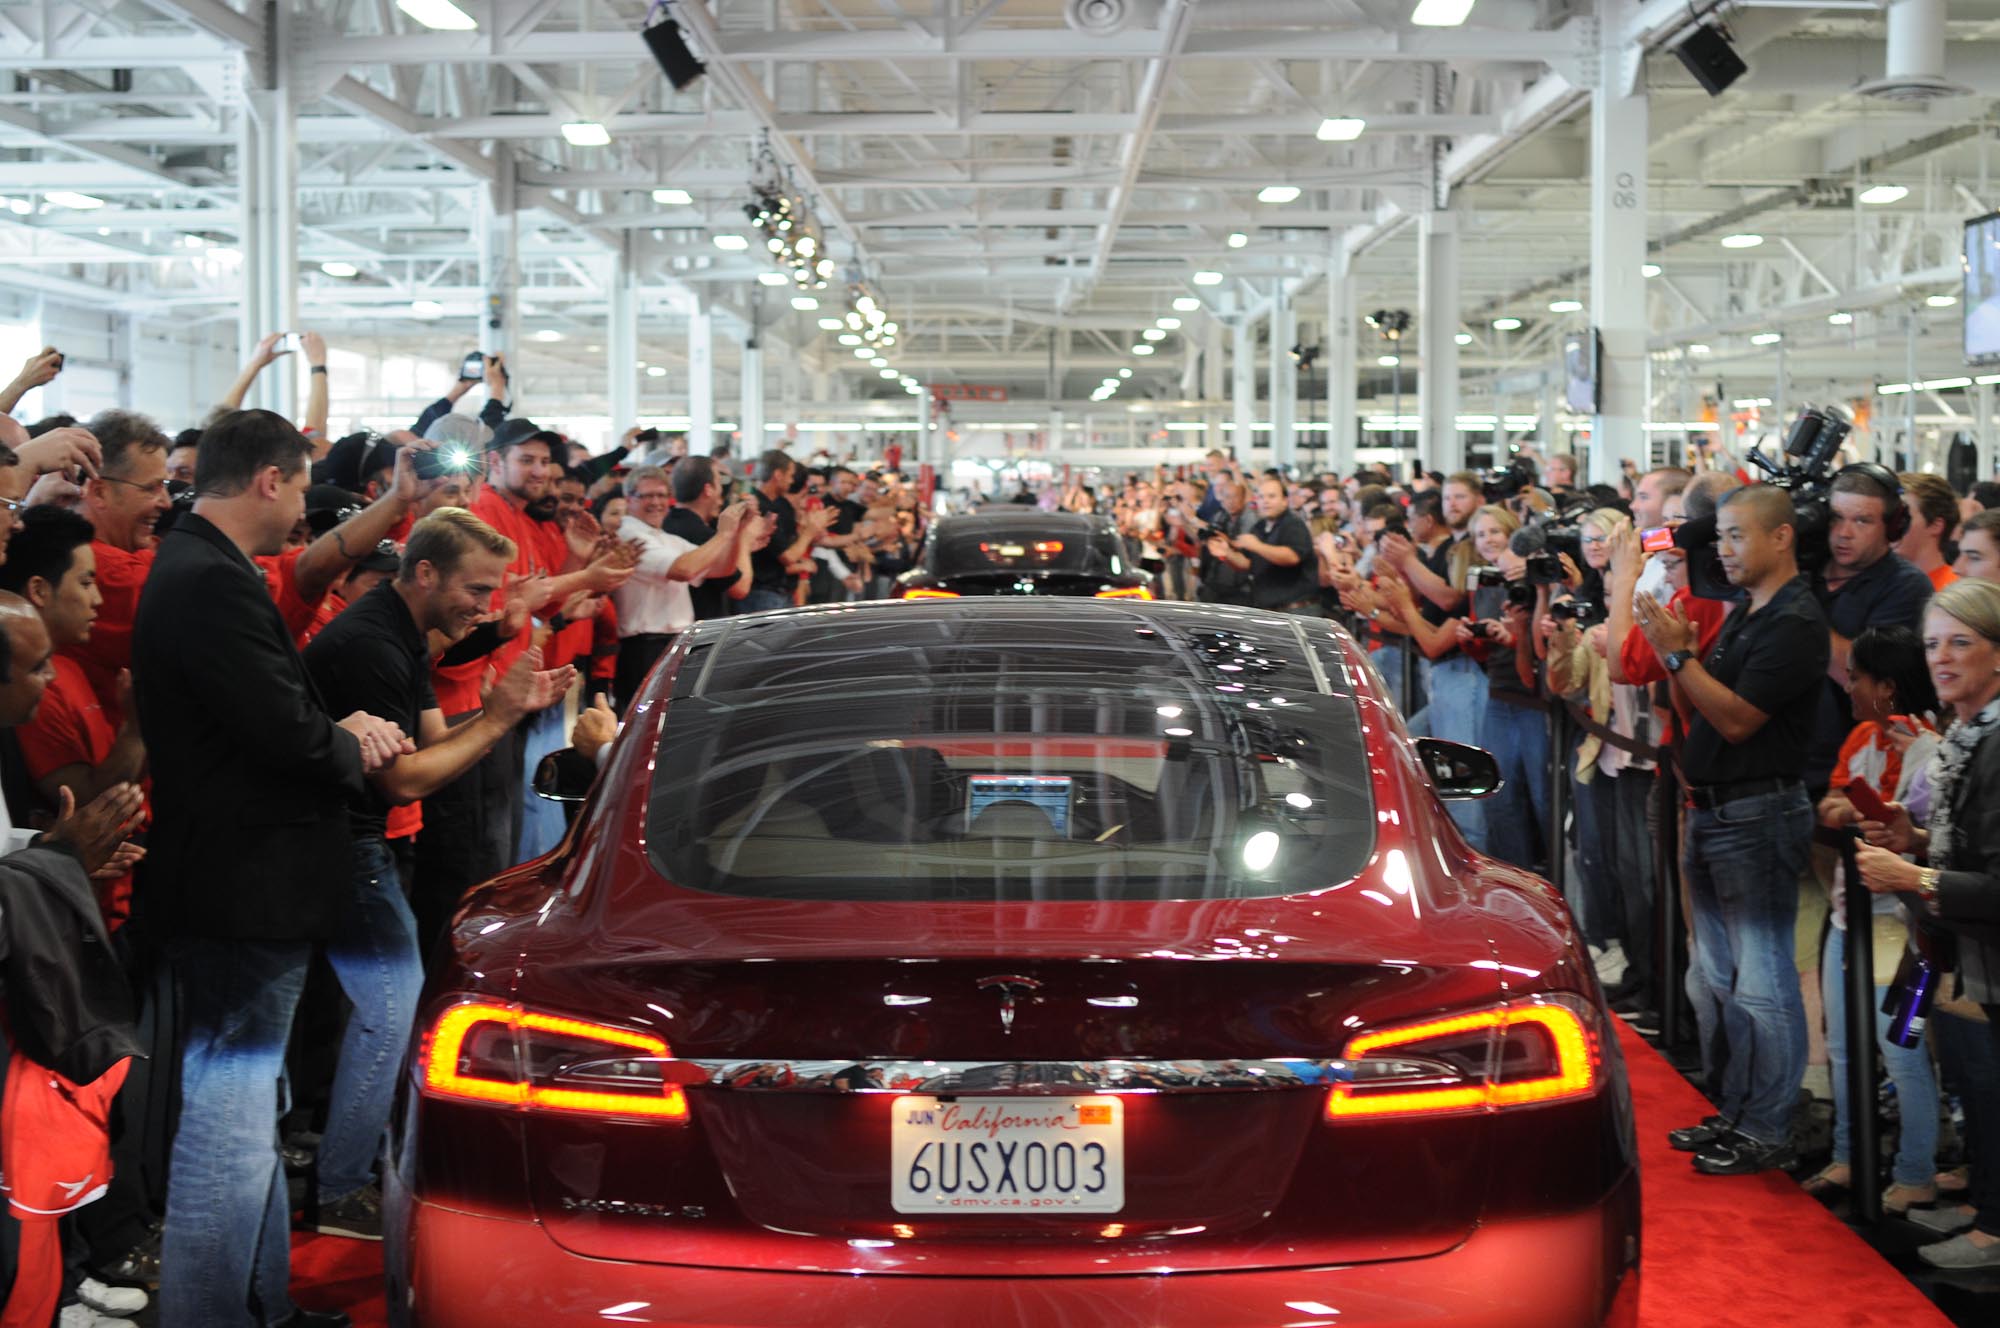 Một trong những đợt giao hàng đầu tiên của Model S tại Nhà máy Tesla ở California (Mỹ), vào tháng 6/2012. Ảnh: Flickr/Steve Jurvetson